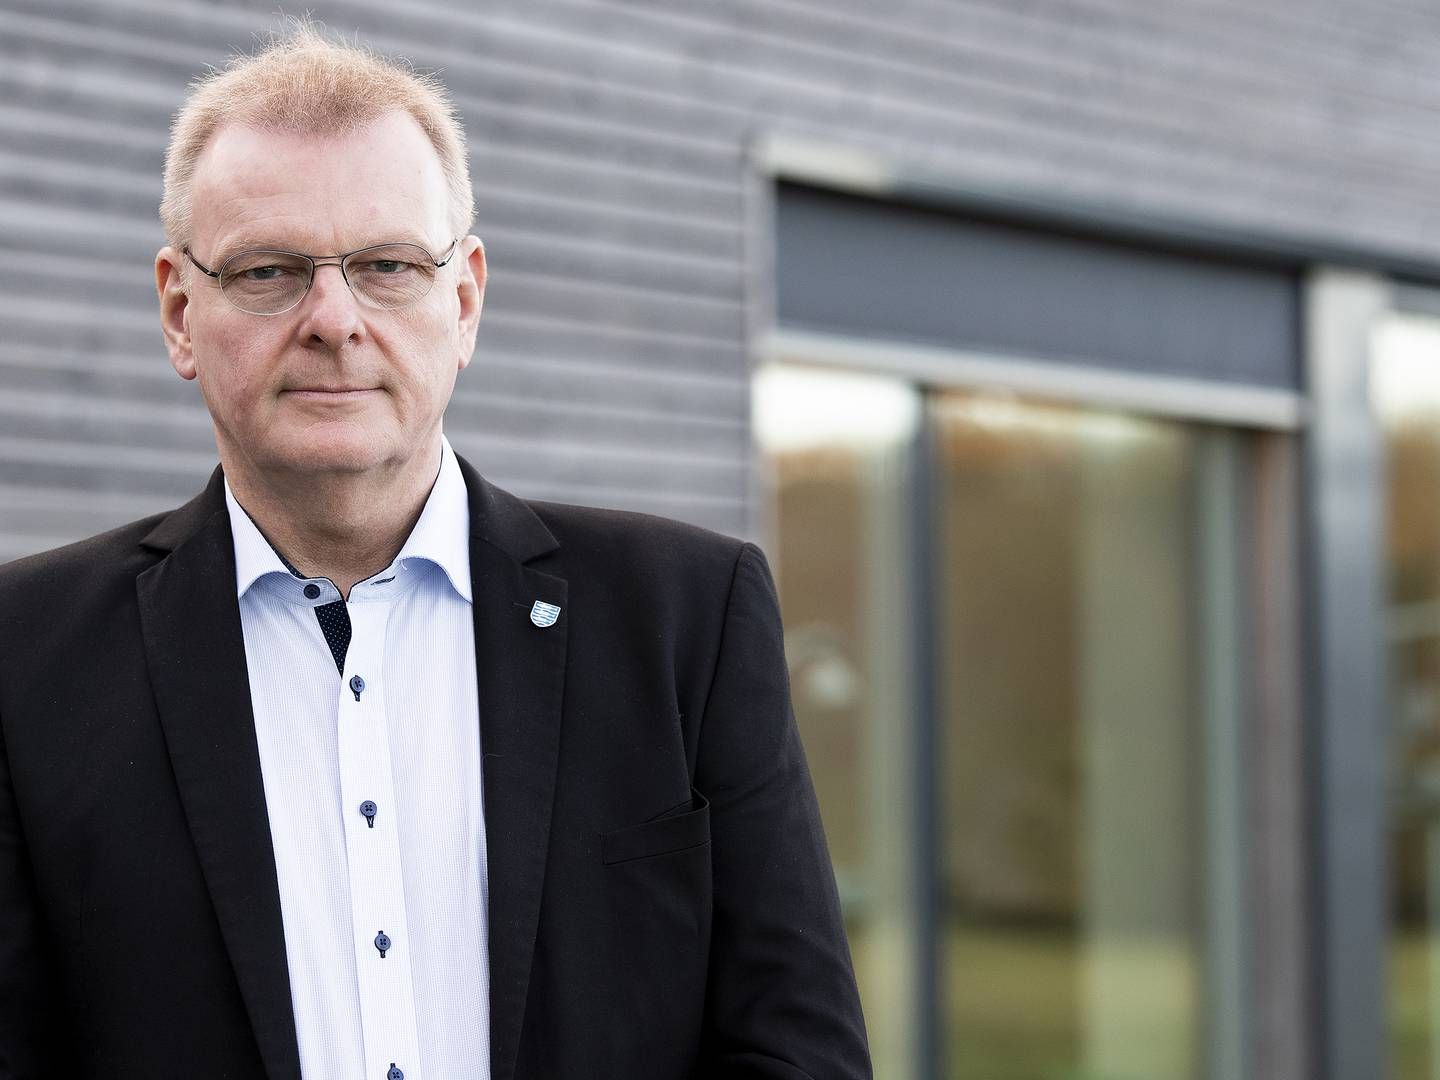 Bestyrelsesformand i affaldsselskabet Arwos, Jens Wistoft, forudser større investeringer i forbindelse med den nye affaldsaftale. | Foto: Arwos //PR